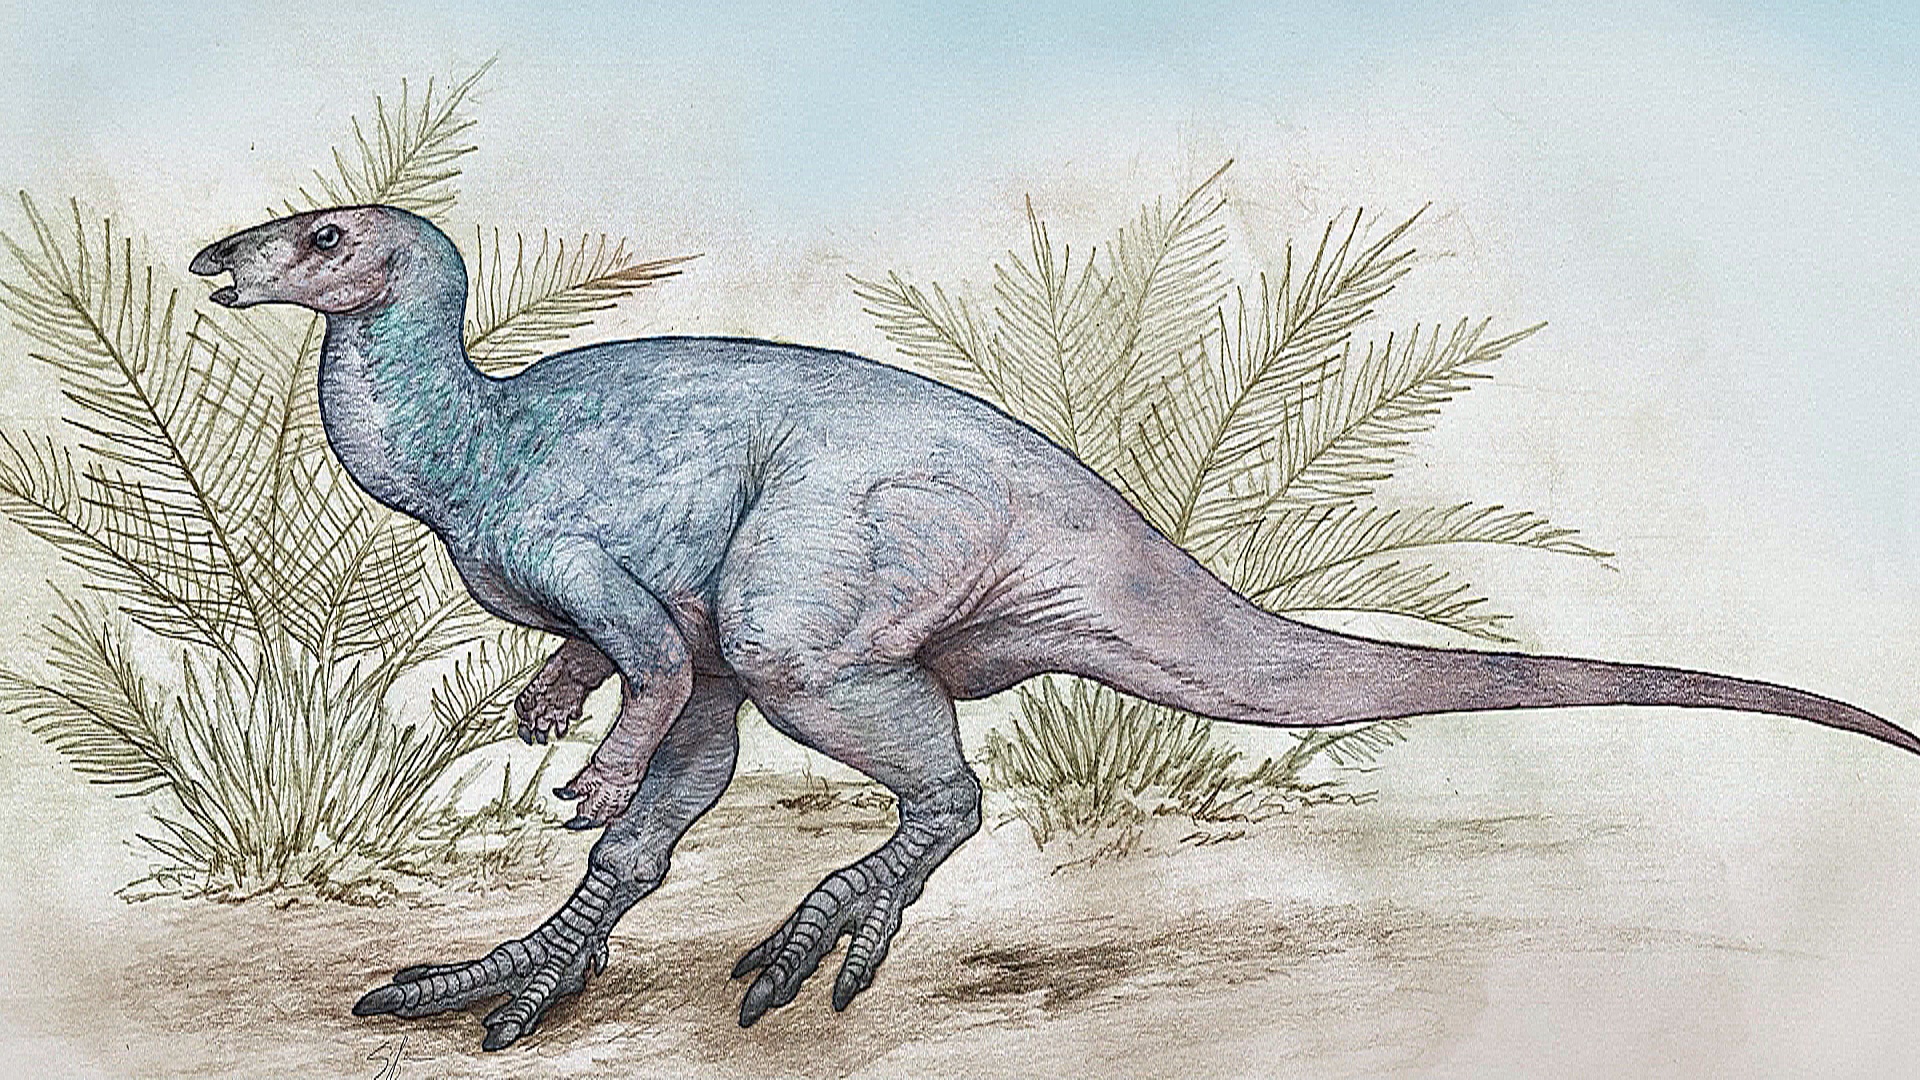 Новый вид проворных динозавров открыли в Аргентине